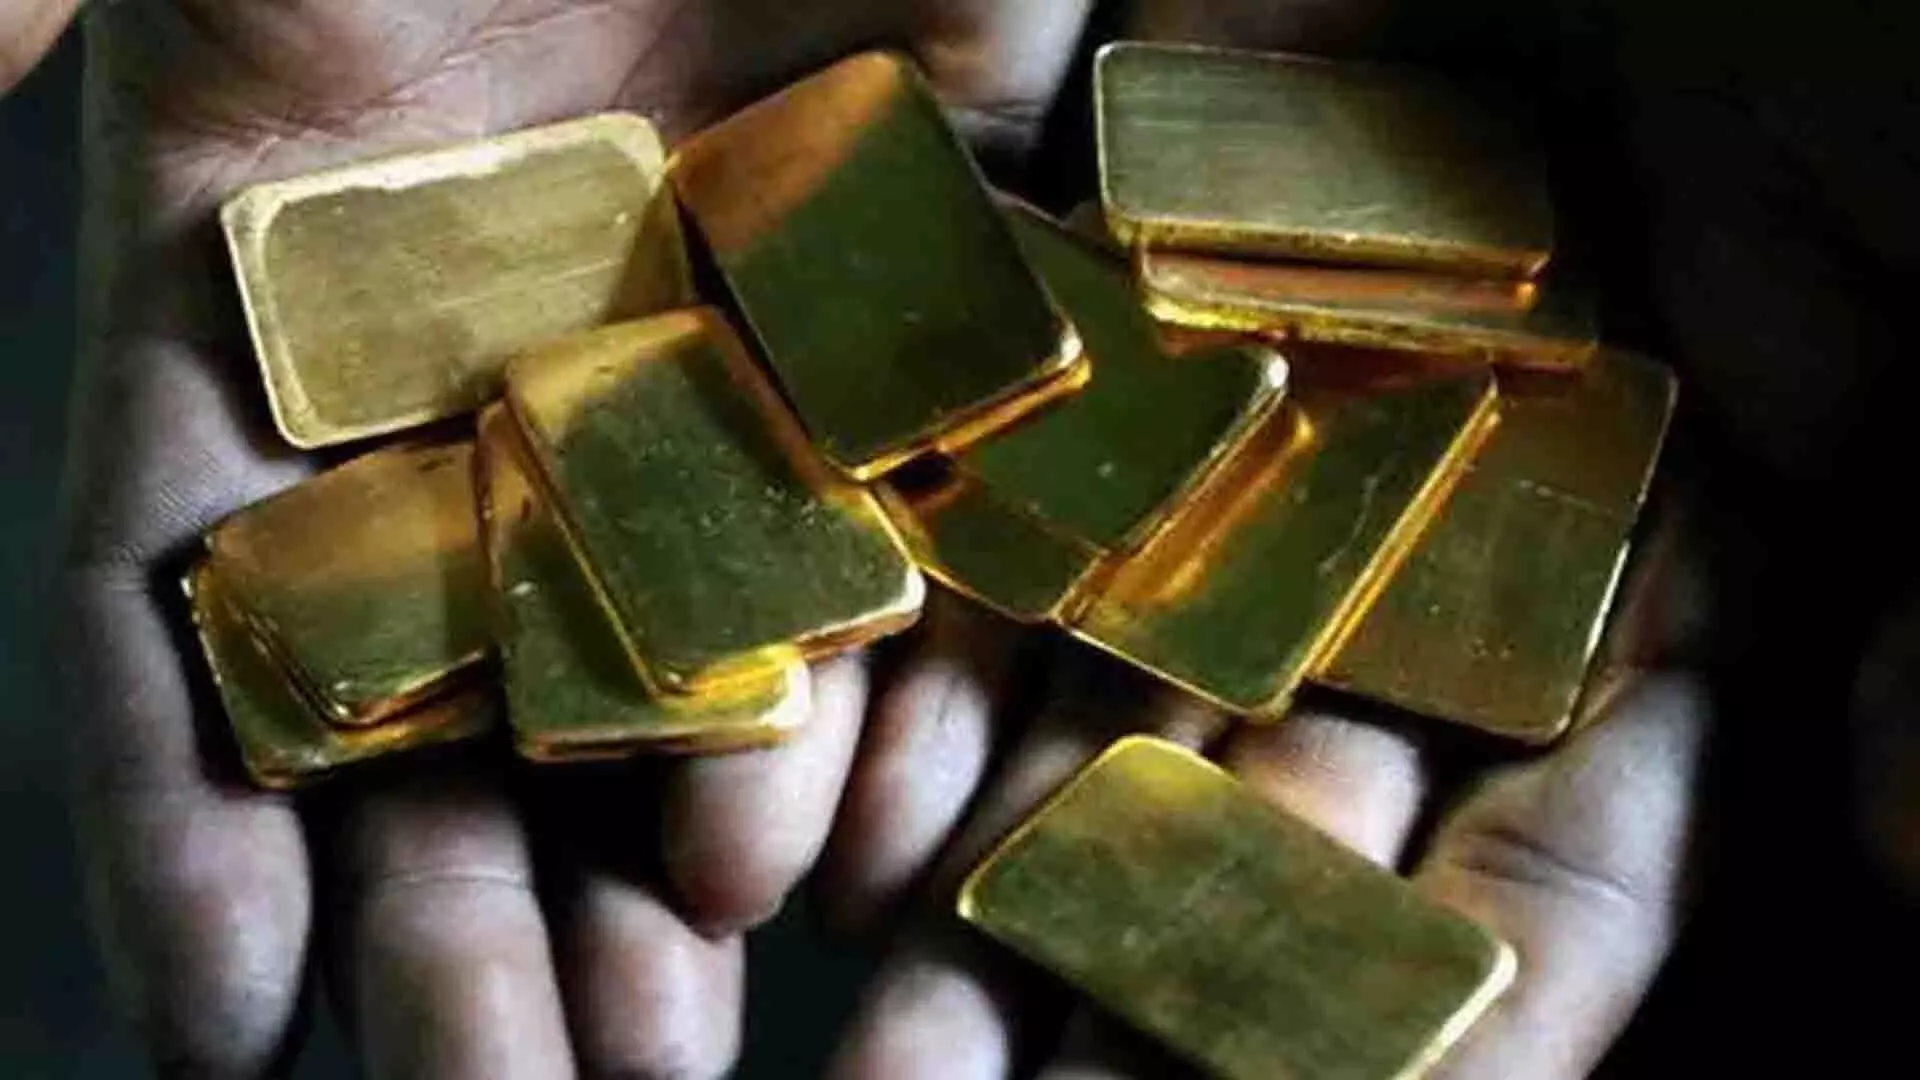 इंडिगो फ्लाइट से 2.51 करोड़ का सोना बरामद, कस्टम विभाग की कार्रवाई